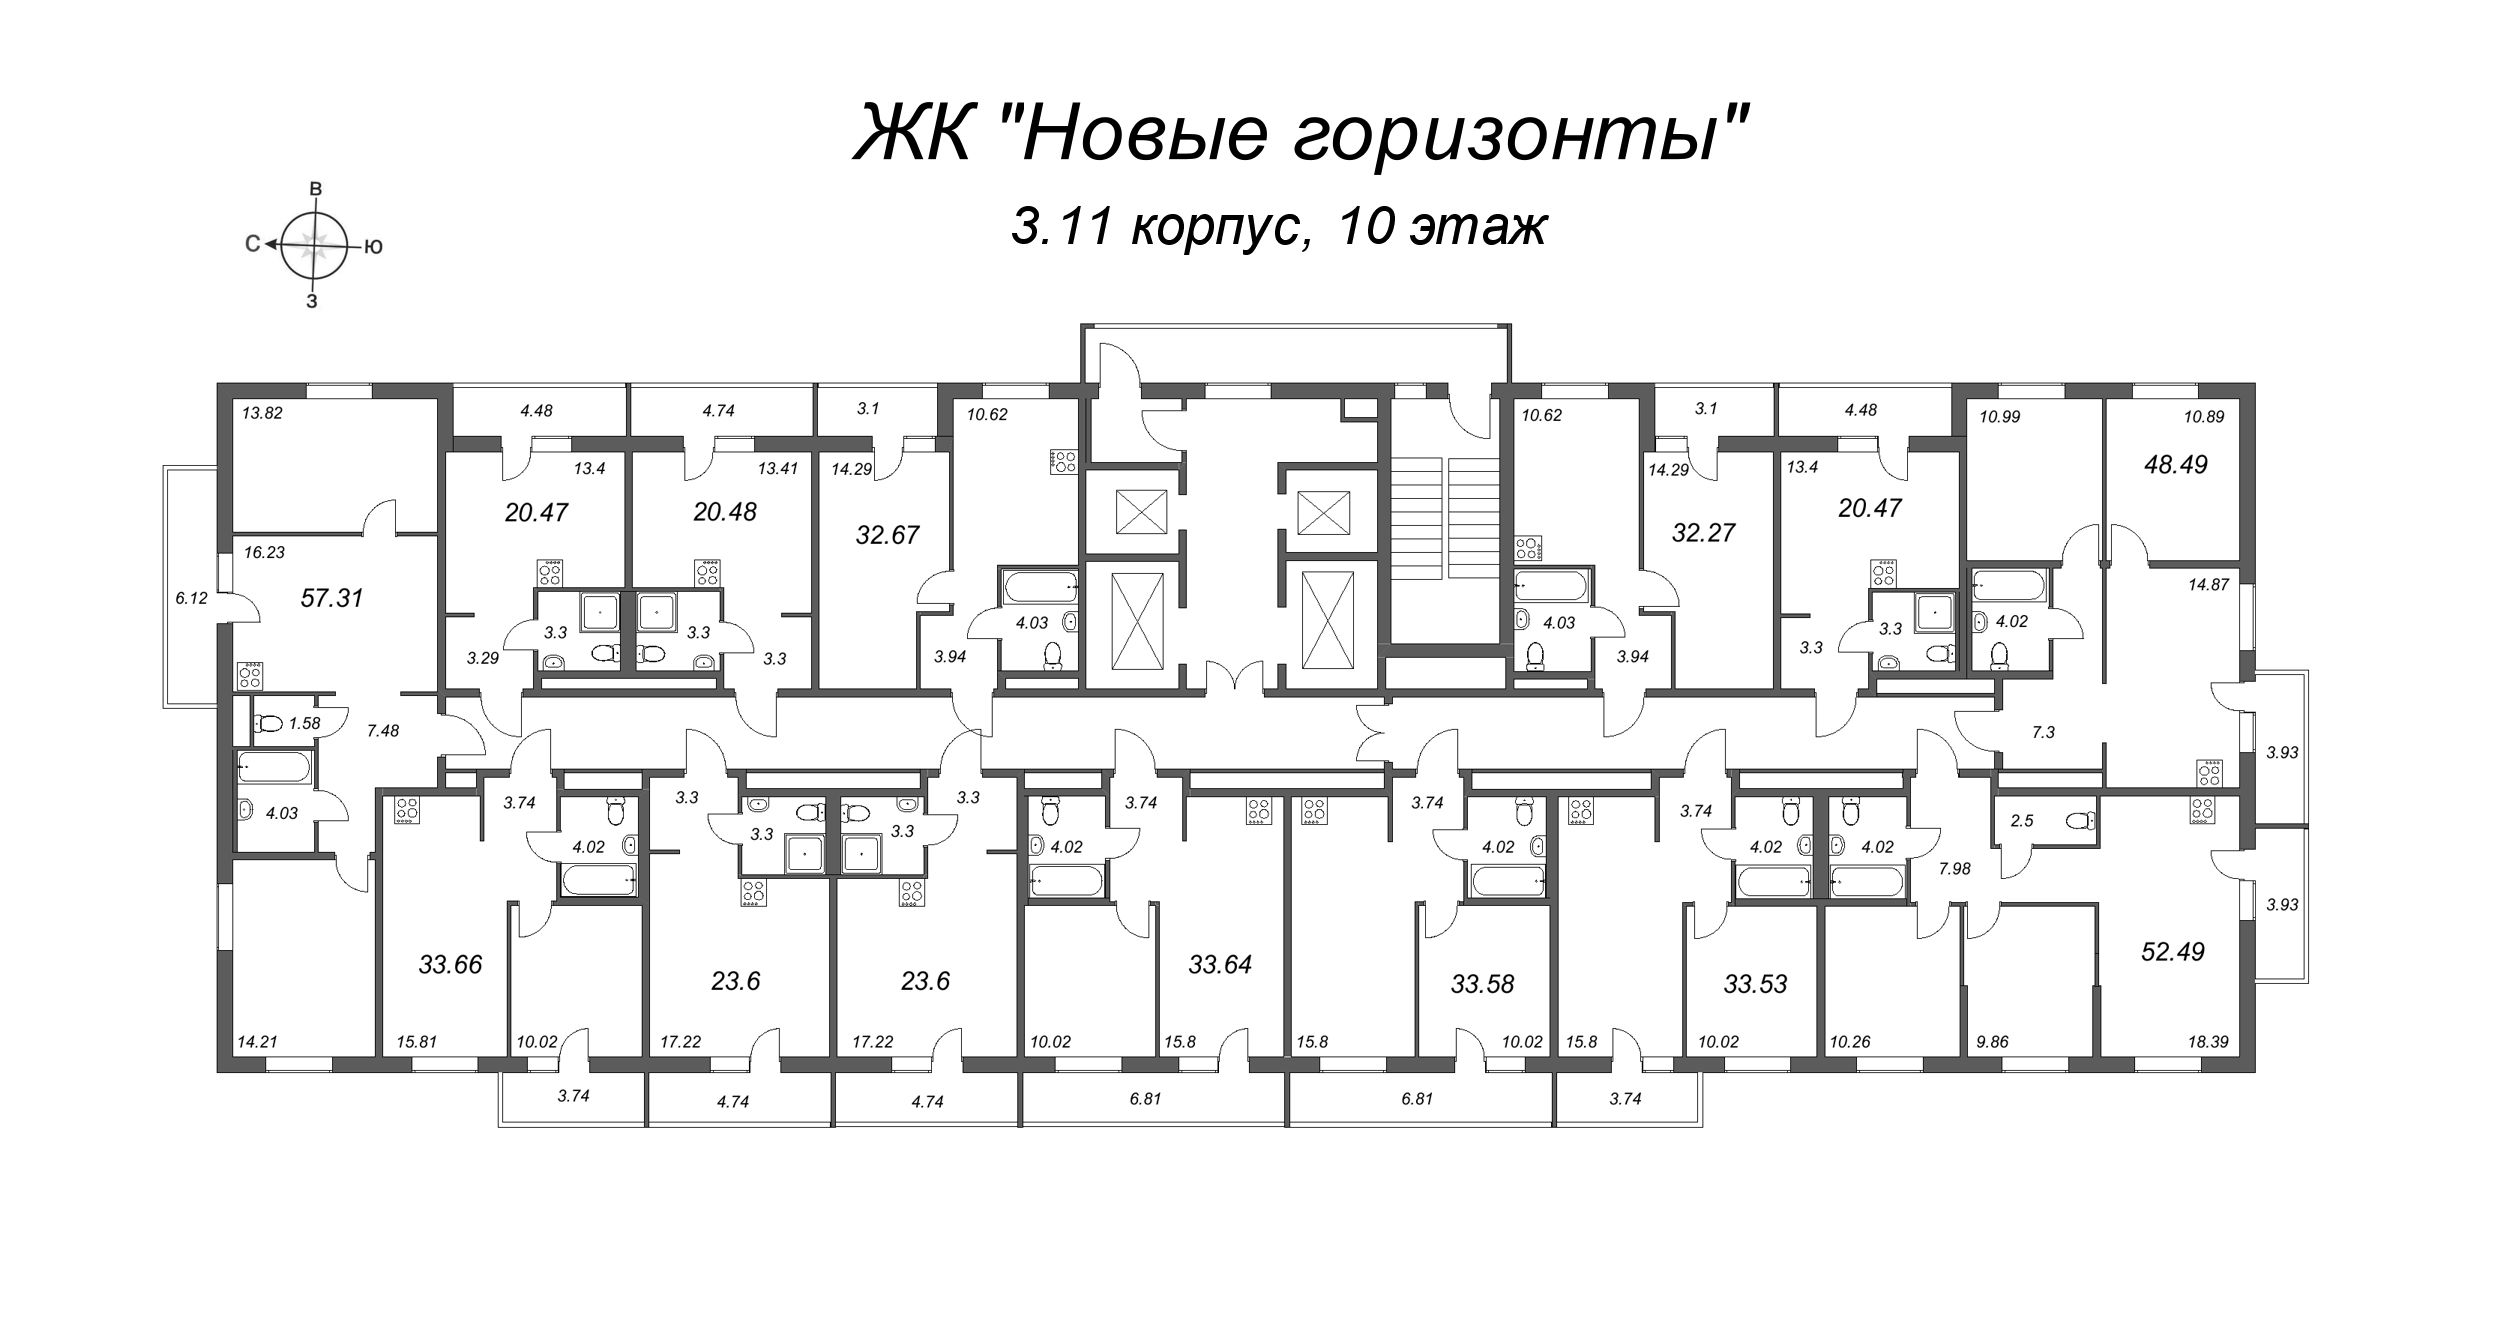 3-комнатная (Евро) квартира, 57.31 м² в ЖК "Новые горизонты" - планировка этажа